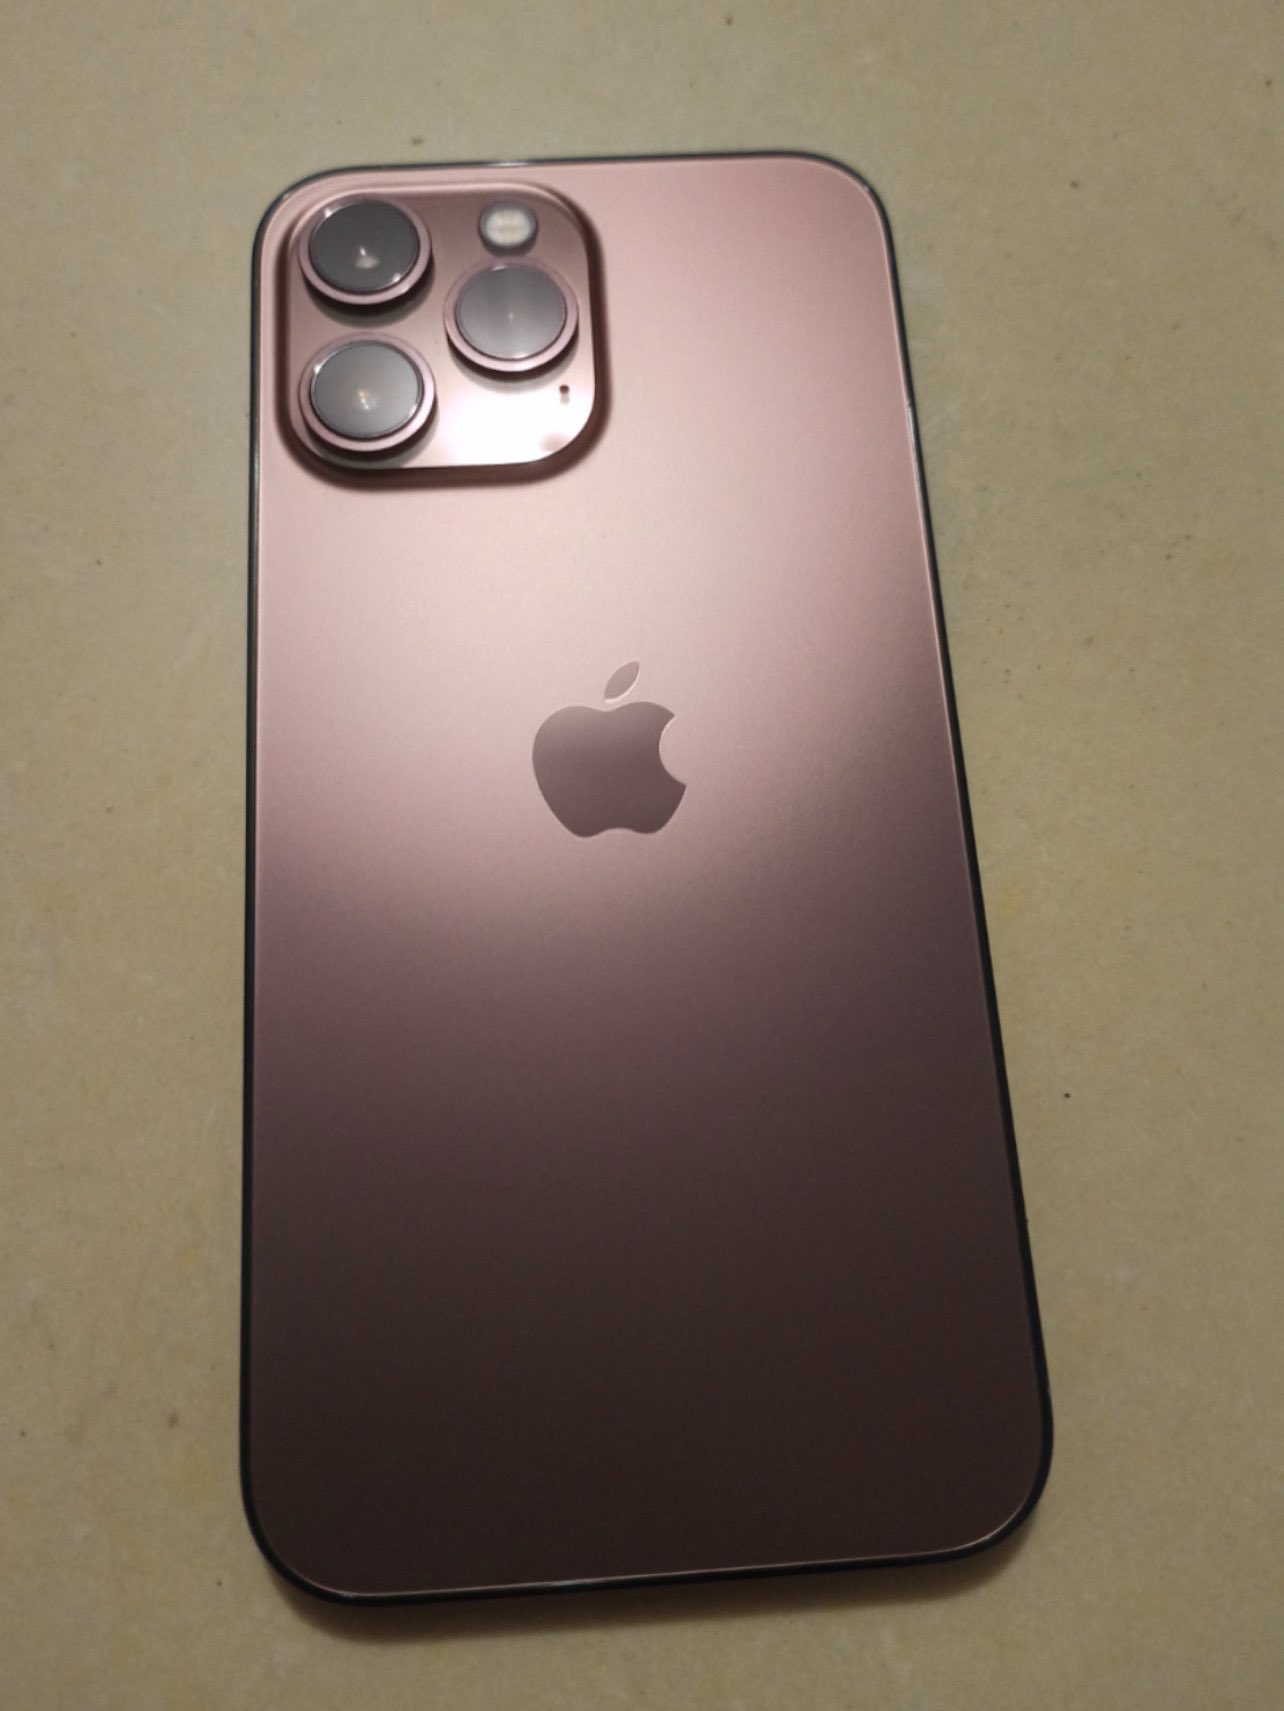 Появились фото iPhone 13 Pro в цвете розовое золото